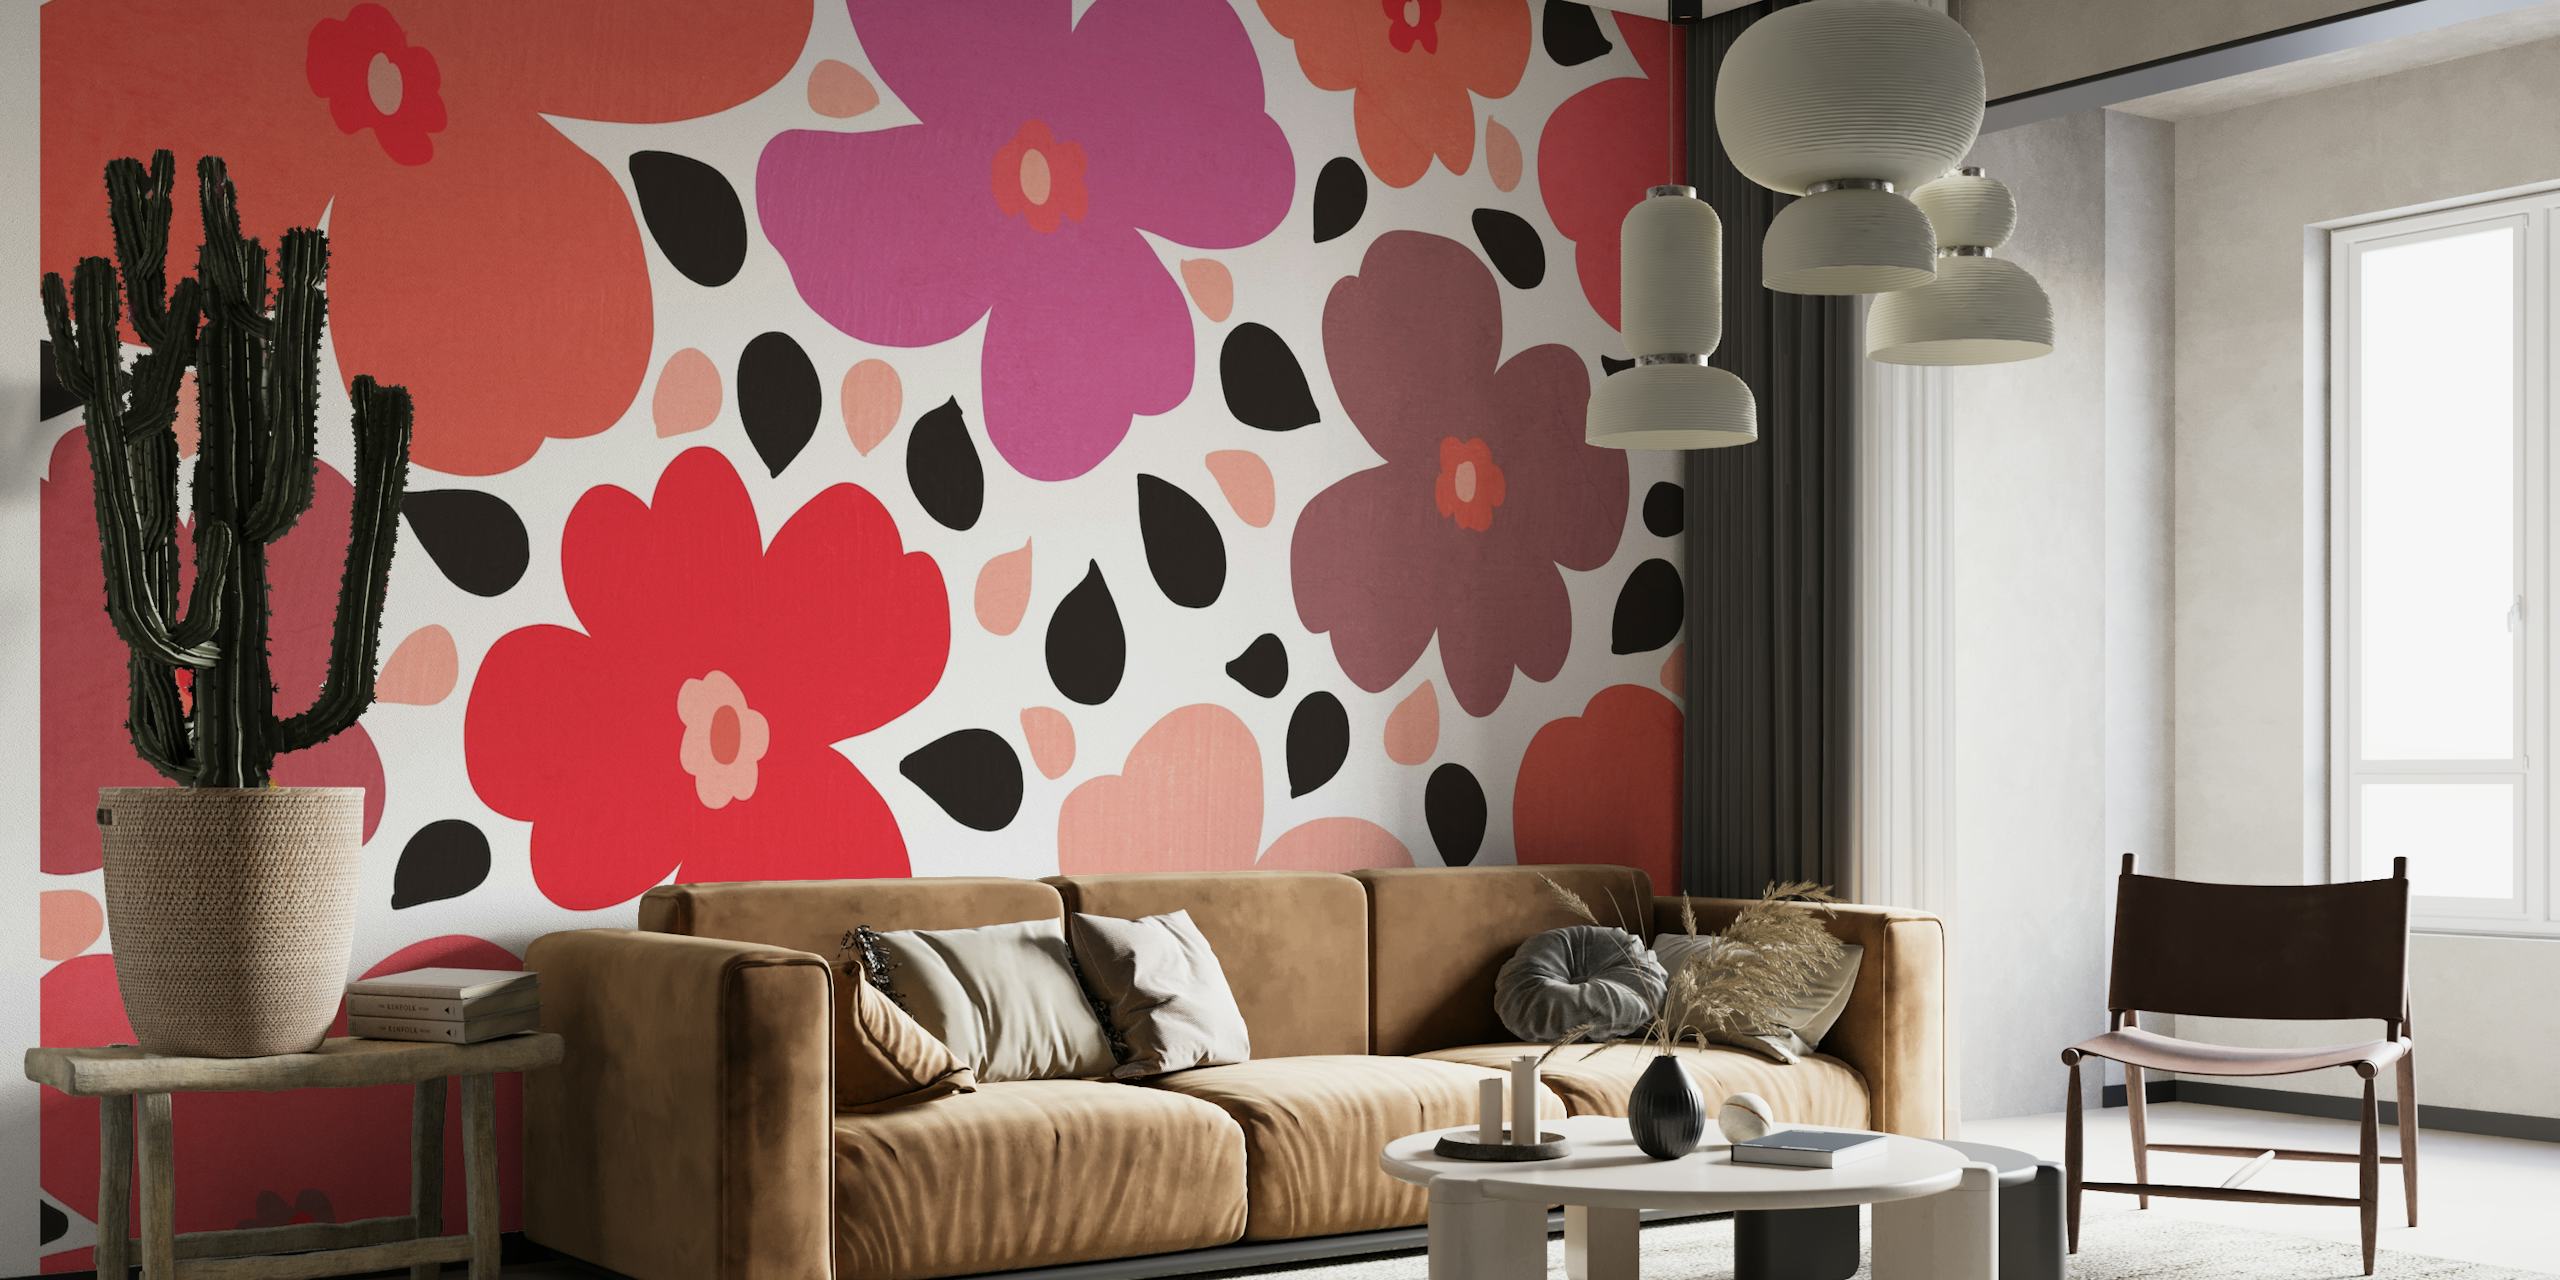 fotomural vinílico de parede floral vintage com tons suaves de vermelhos e roxos